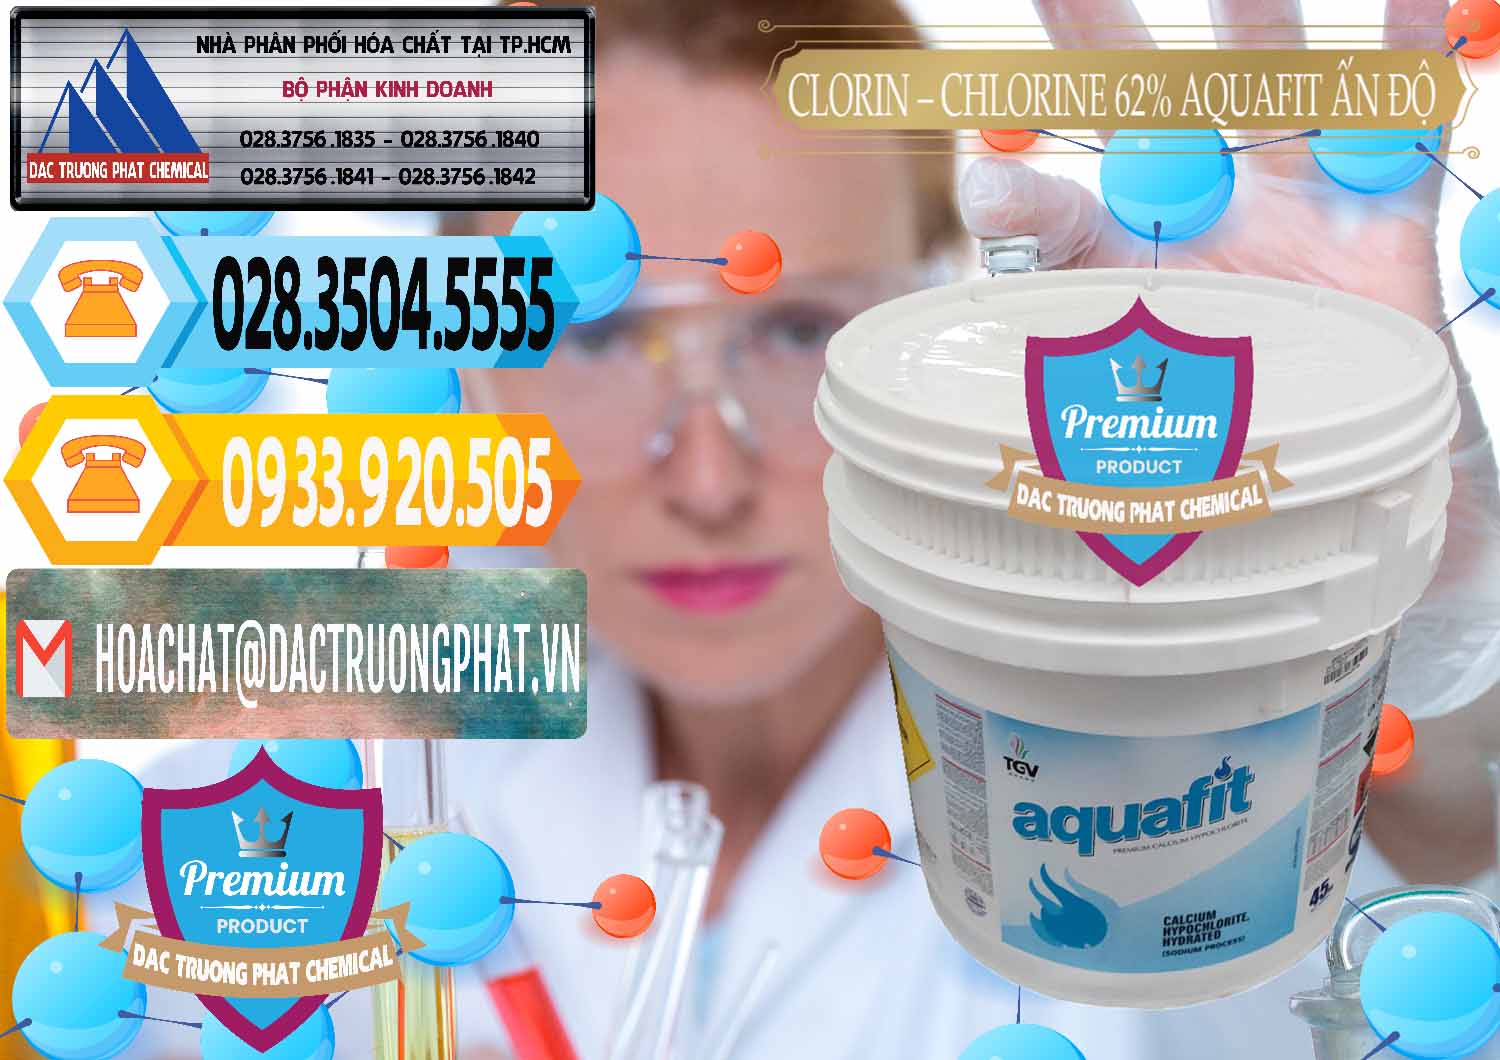 Nhà cung cấp ( bán ) Clorin - Chlorine 62% Aquafit Thùng Lùn Ấn Độ India - 0057 - Nhà cung cấp và phân phối hóa chất tại TP.HCM - hoachattayrua.net